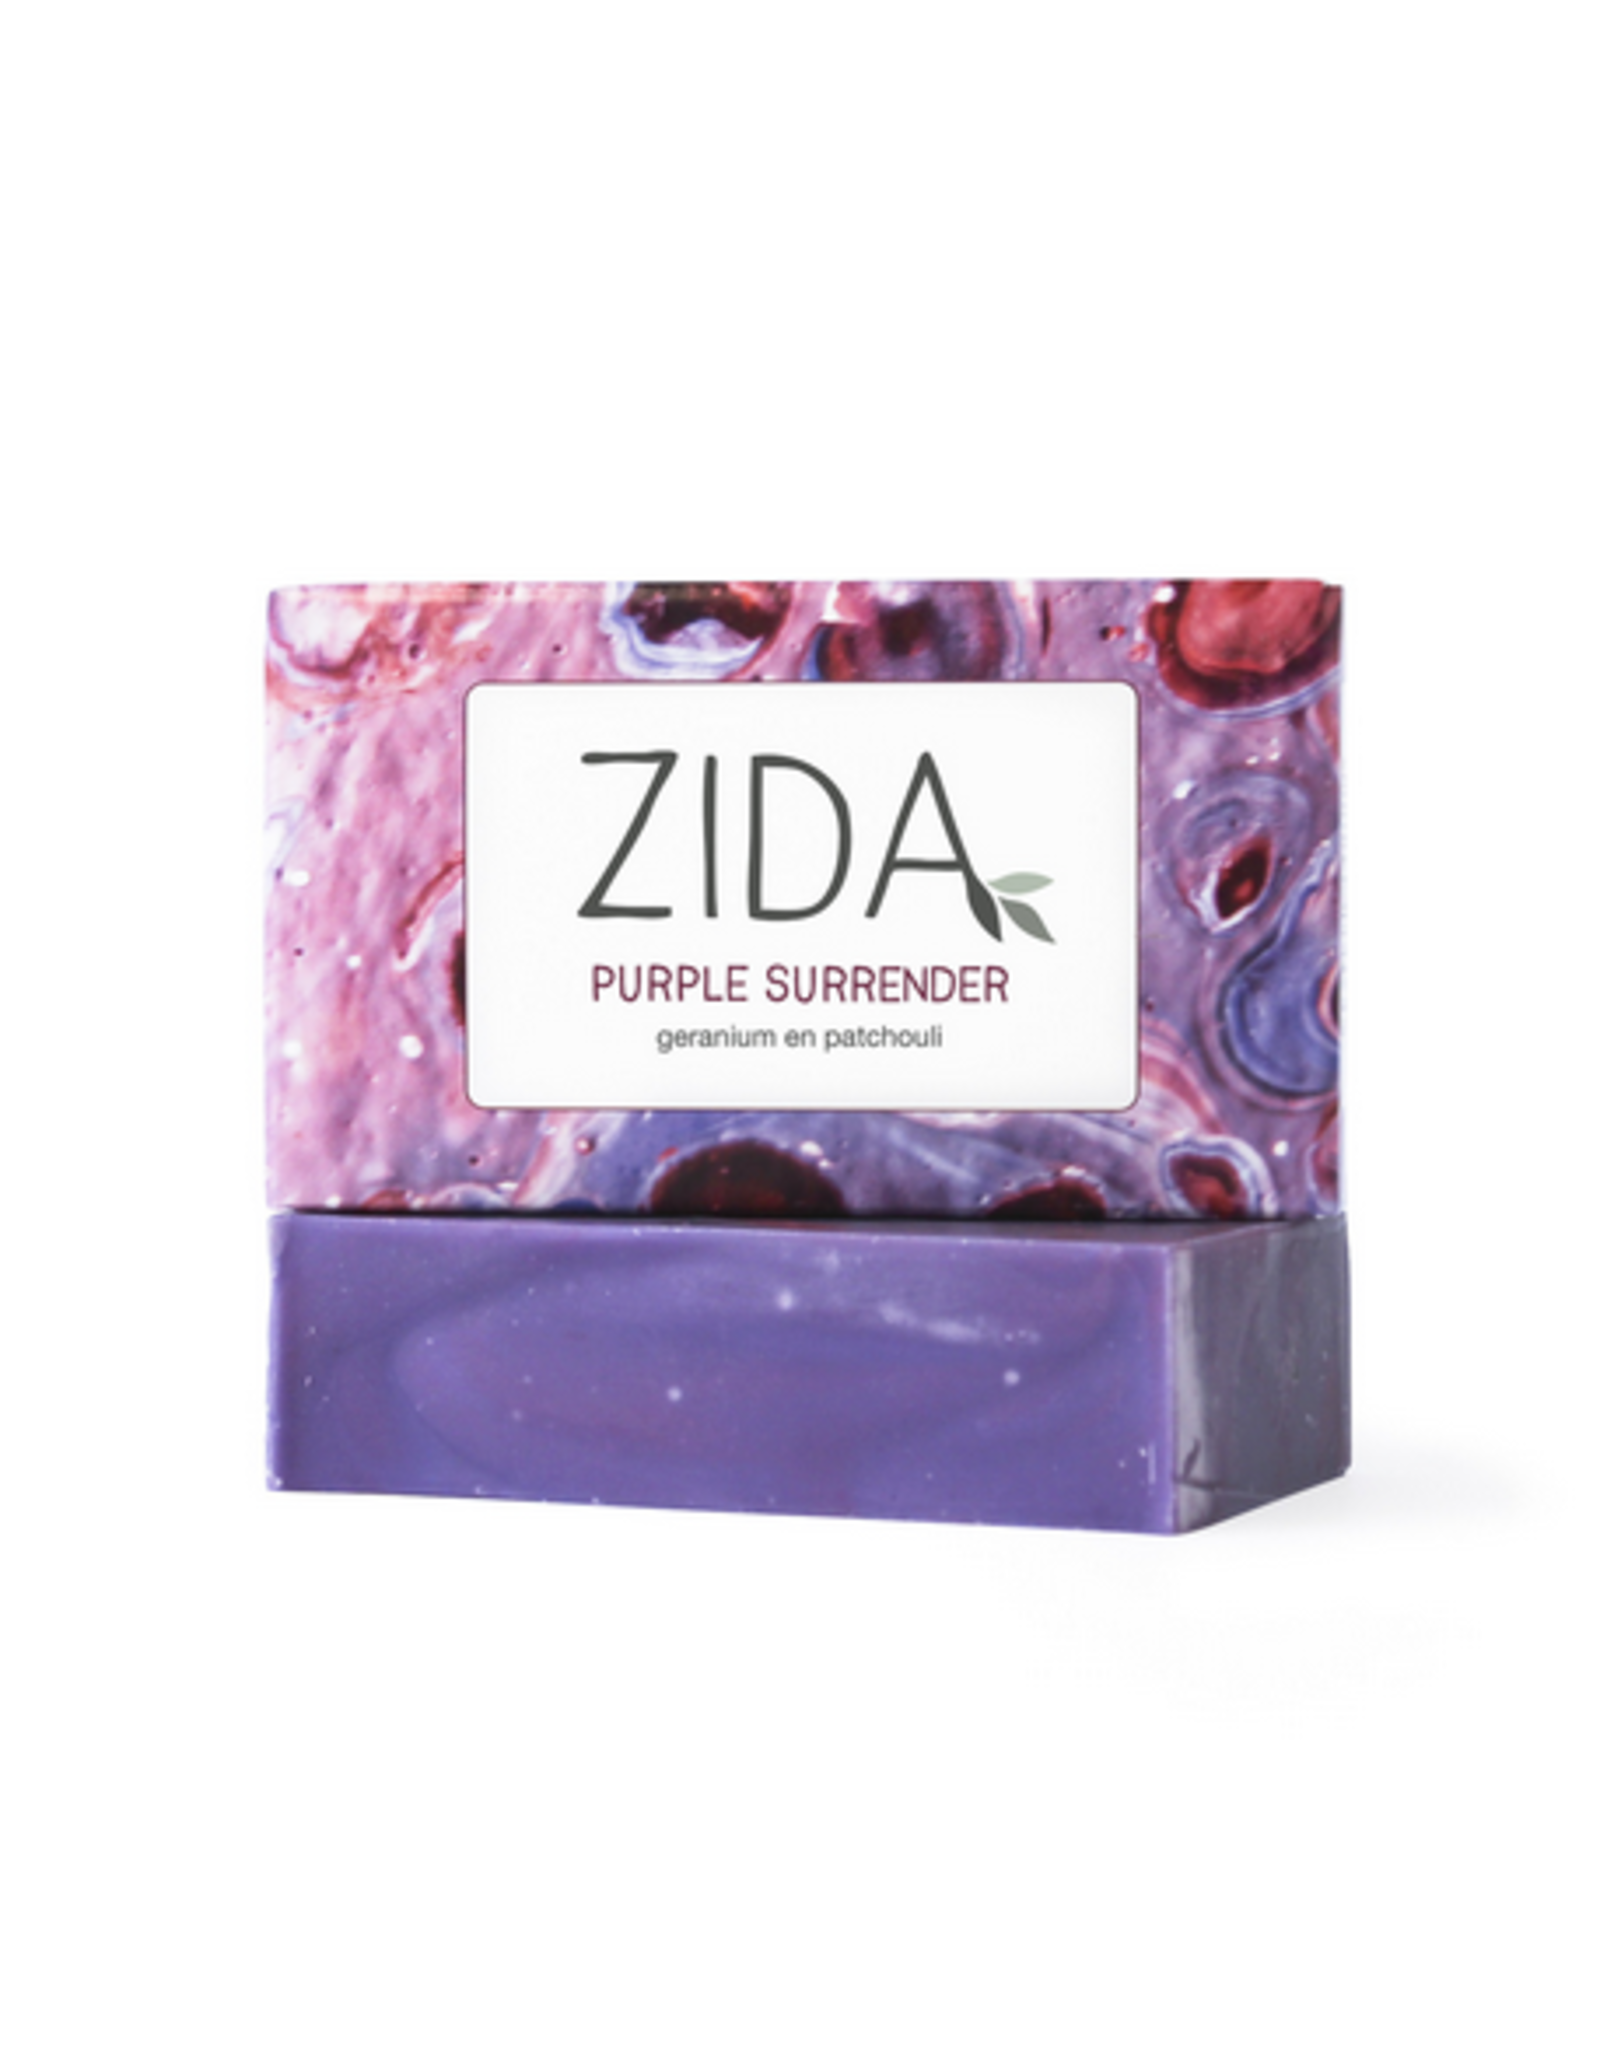 Zida Purple Surrender zeep 100g